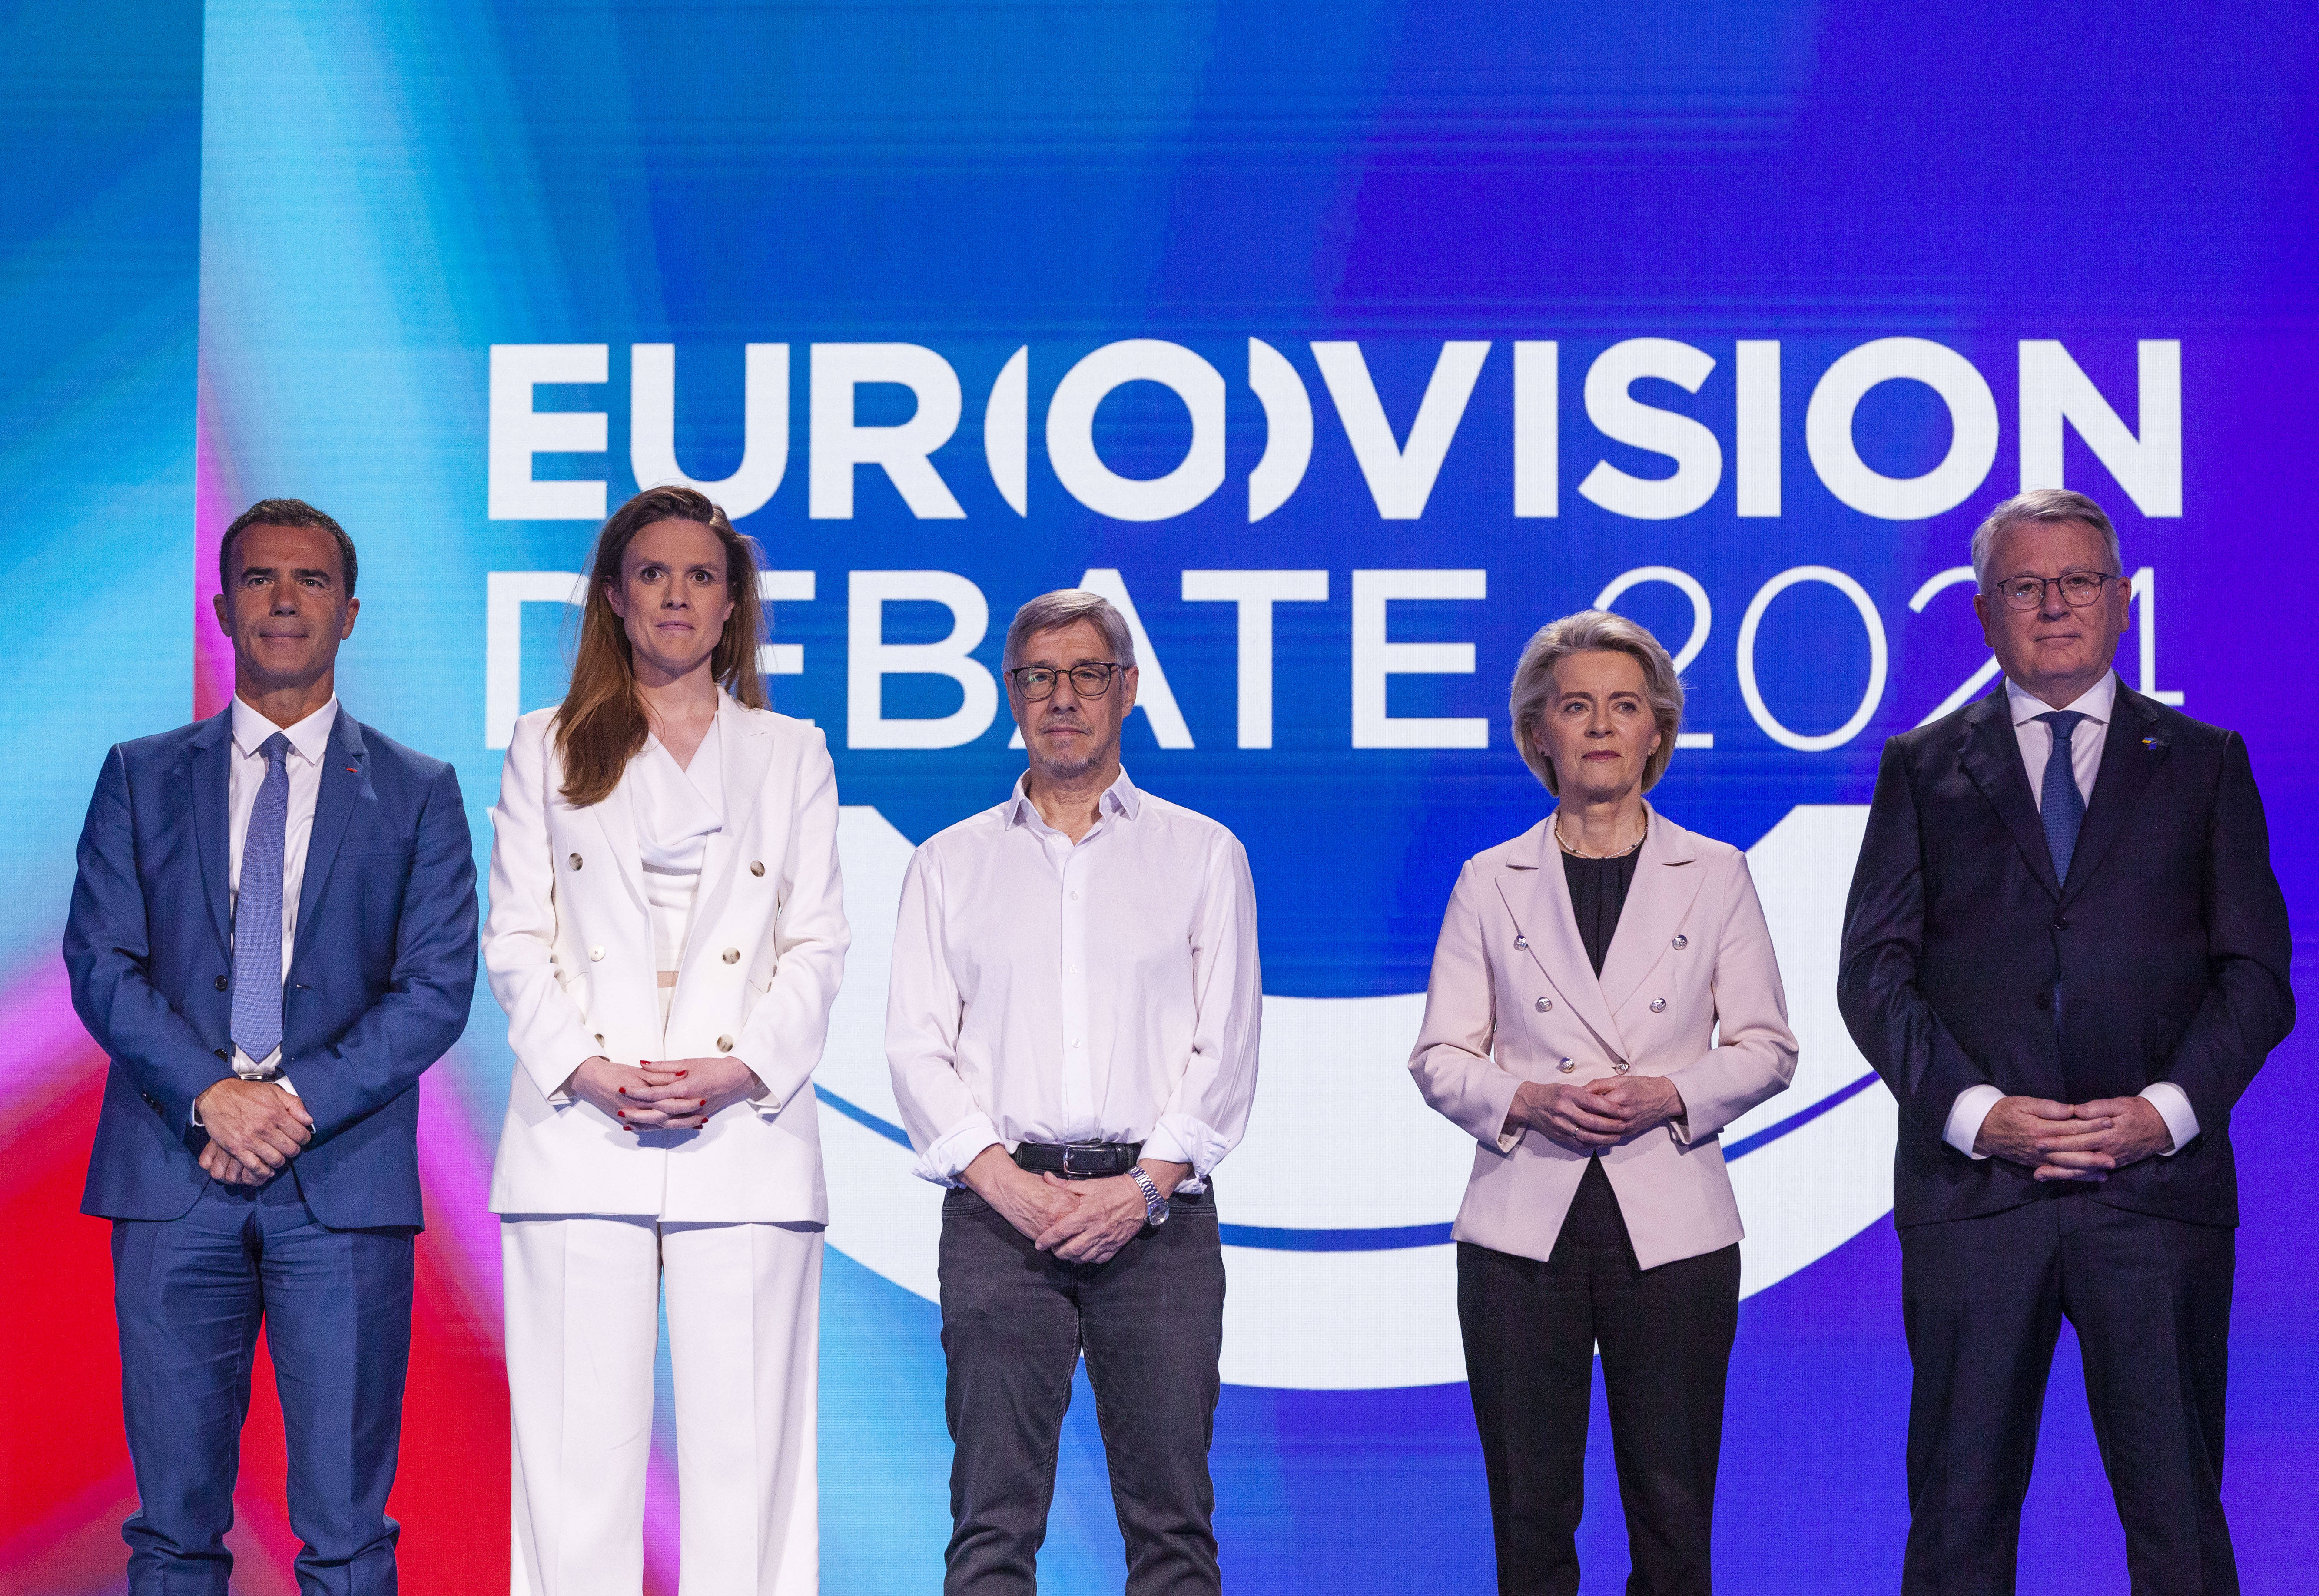 Ein Hauch von Song Contest: Am 23. Mai diskutierten die europäischen Spitzenkandidat*innen für die Europawahl in Brüssel über ihre Vorstellungen für die Zukunft Europas.